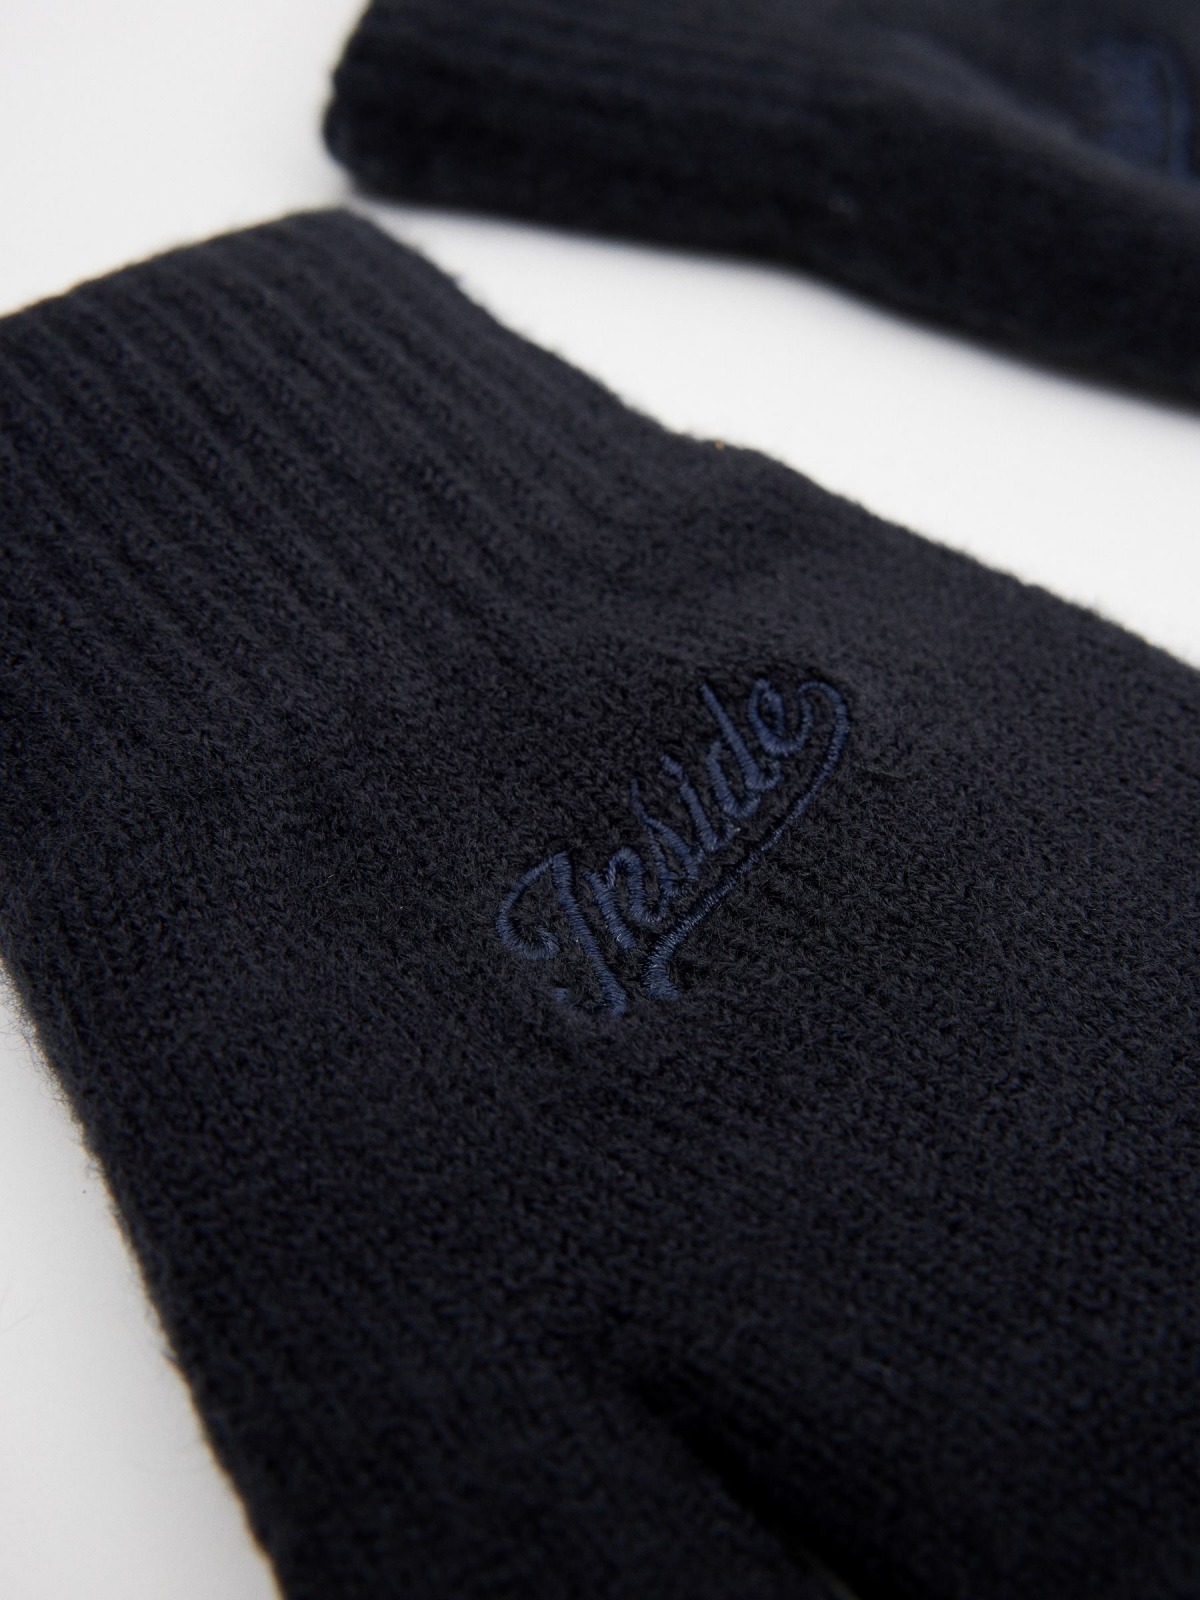 Brand embroidered gloves dark blue detail view